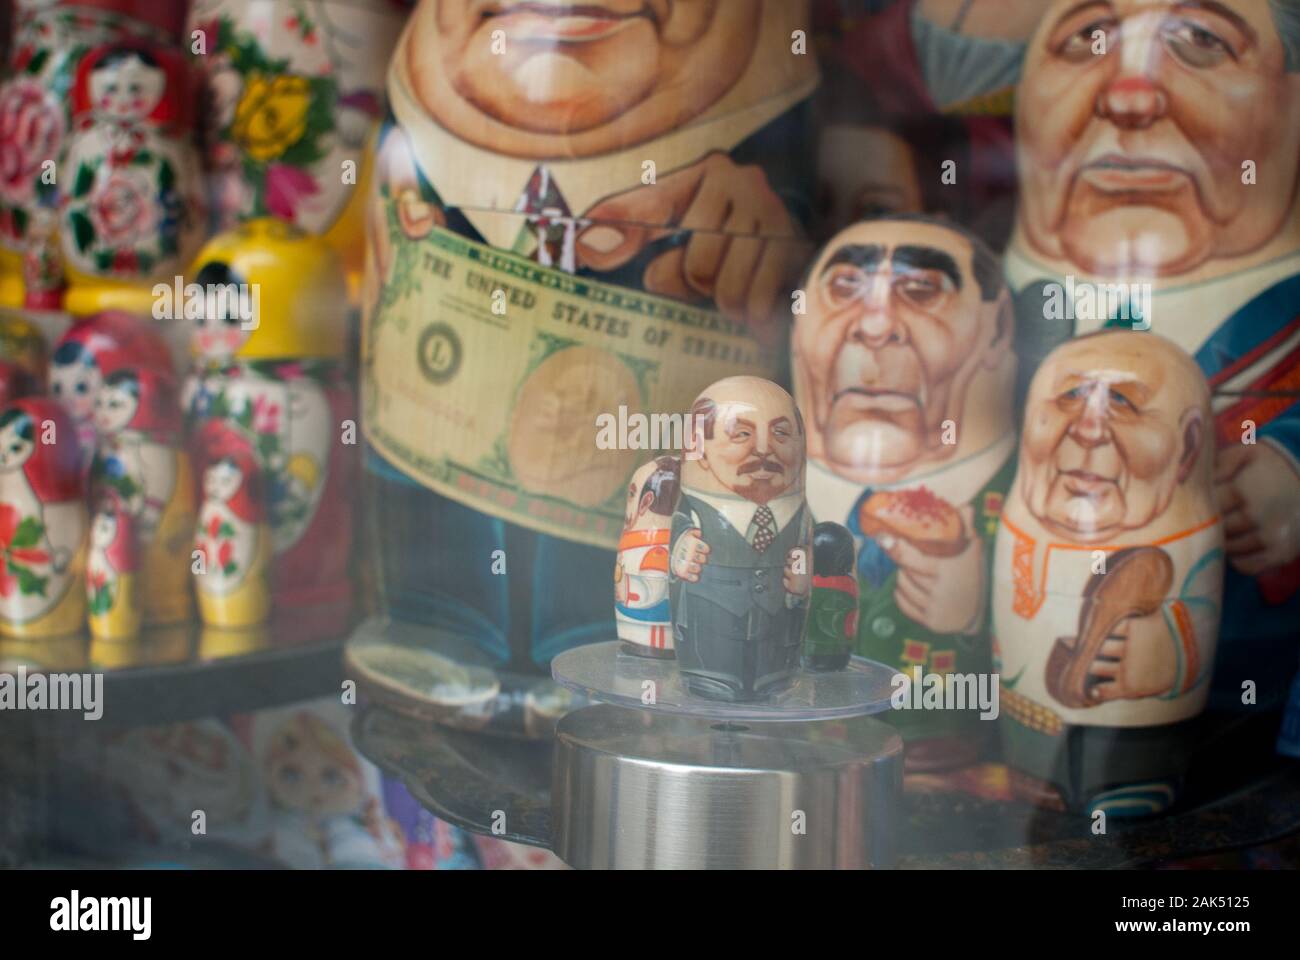 Muñecas rusas de políticos y hombres de poder fotografiados a través de una ventana de tienda Foto de stock